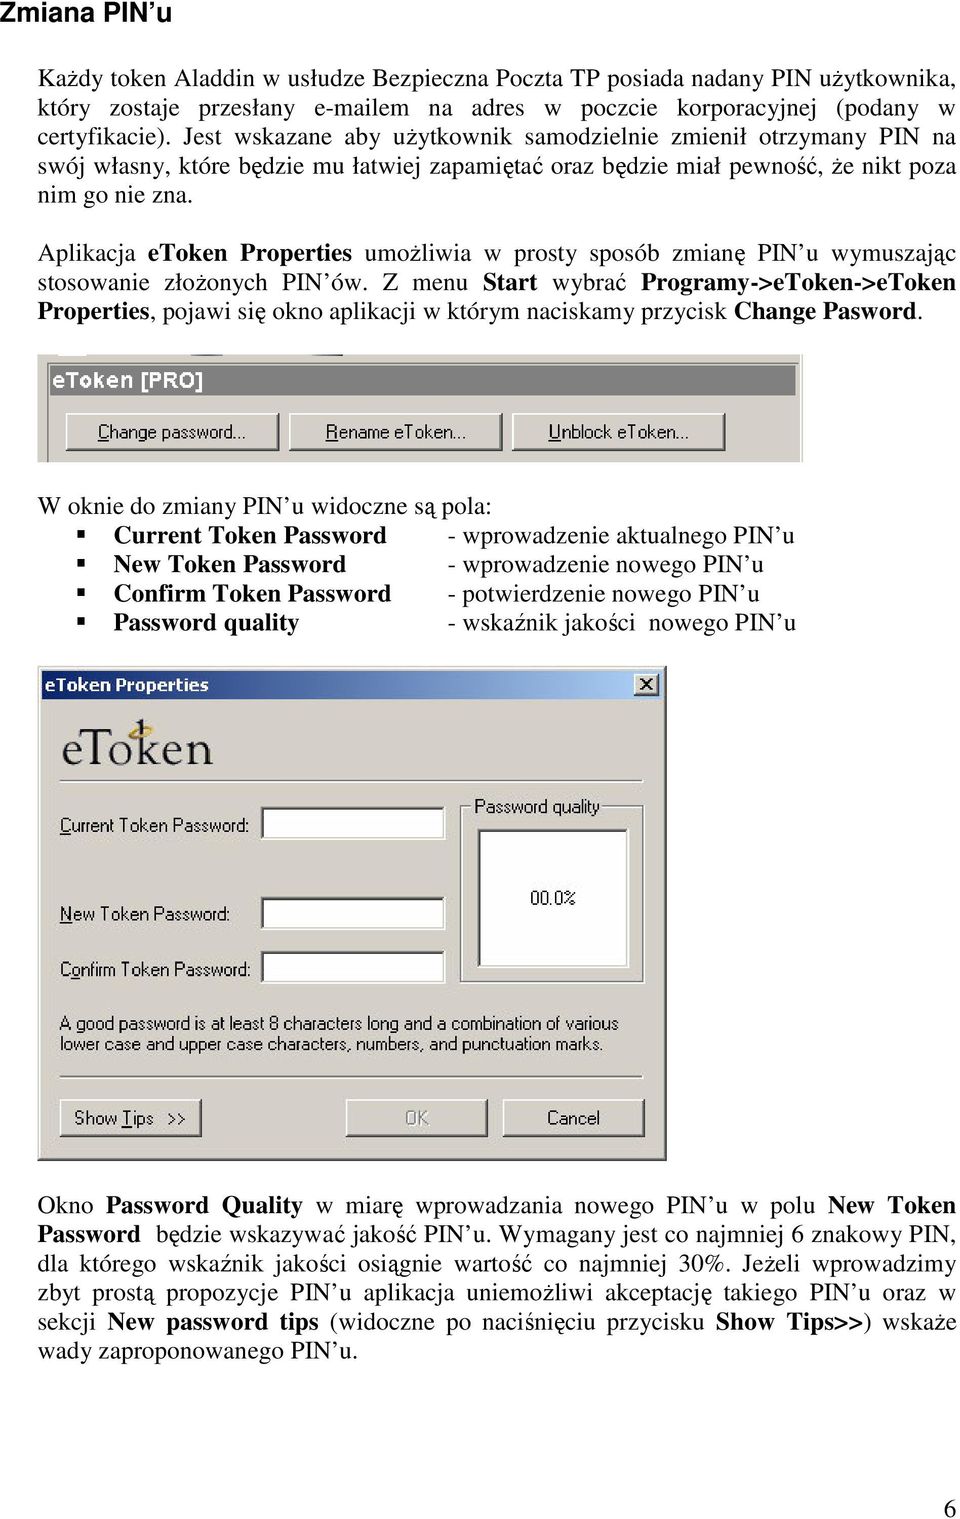 Aplikacja etoken Properties umoŝliwia w prosty sposób zmianę PIN u wymuszając stosowanie złoŝonych PIN ów.